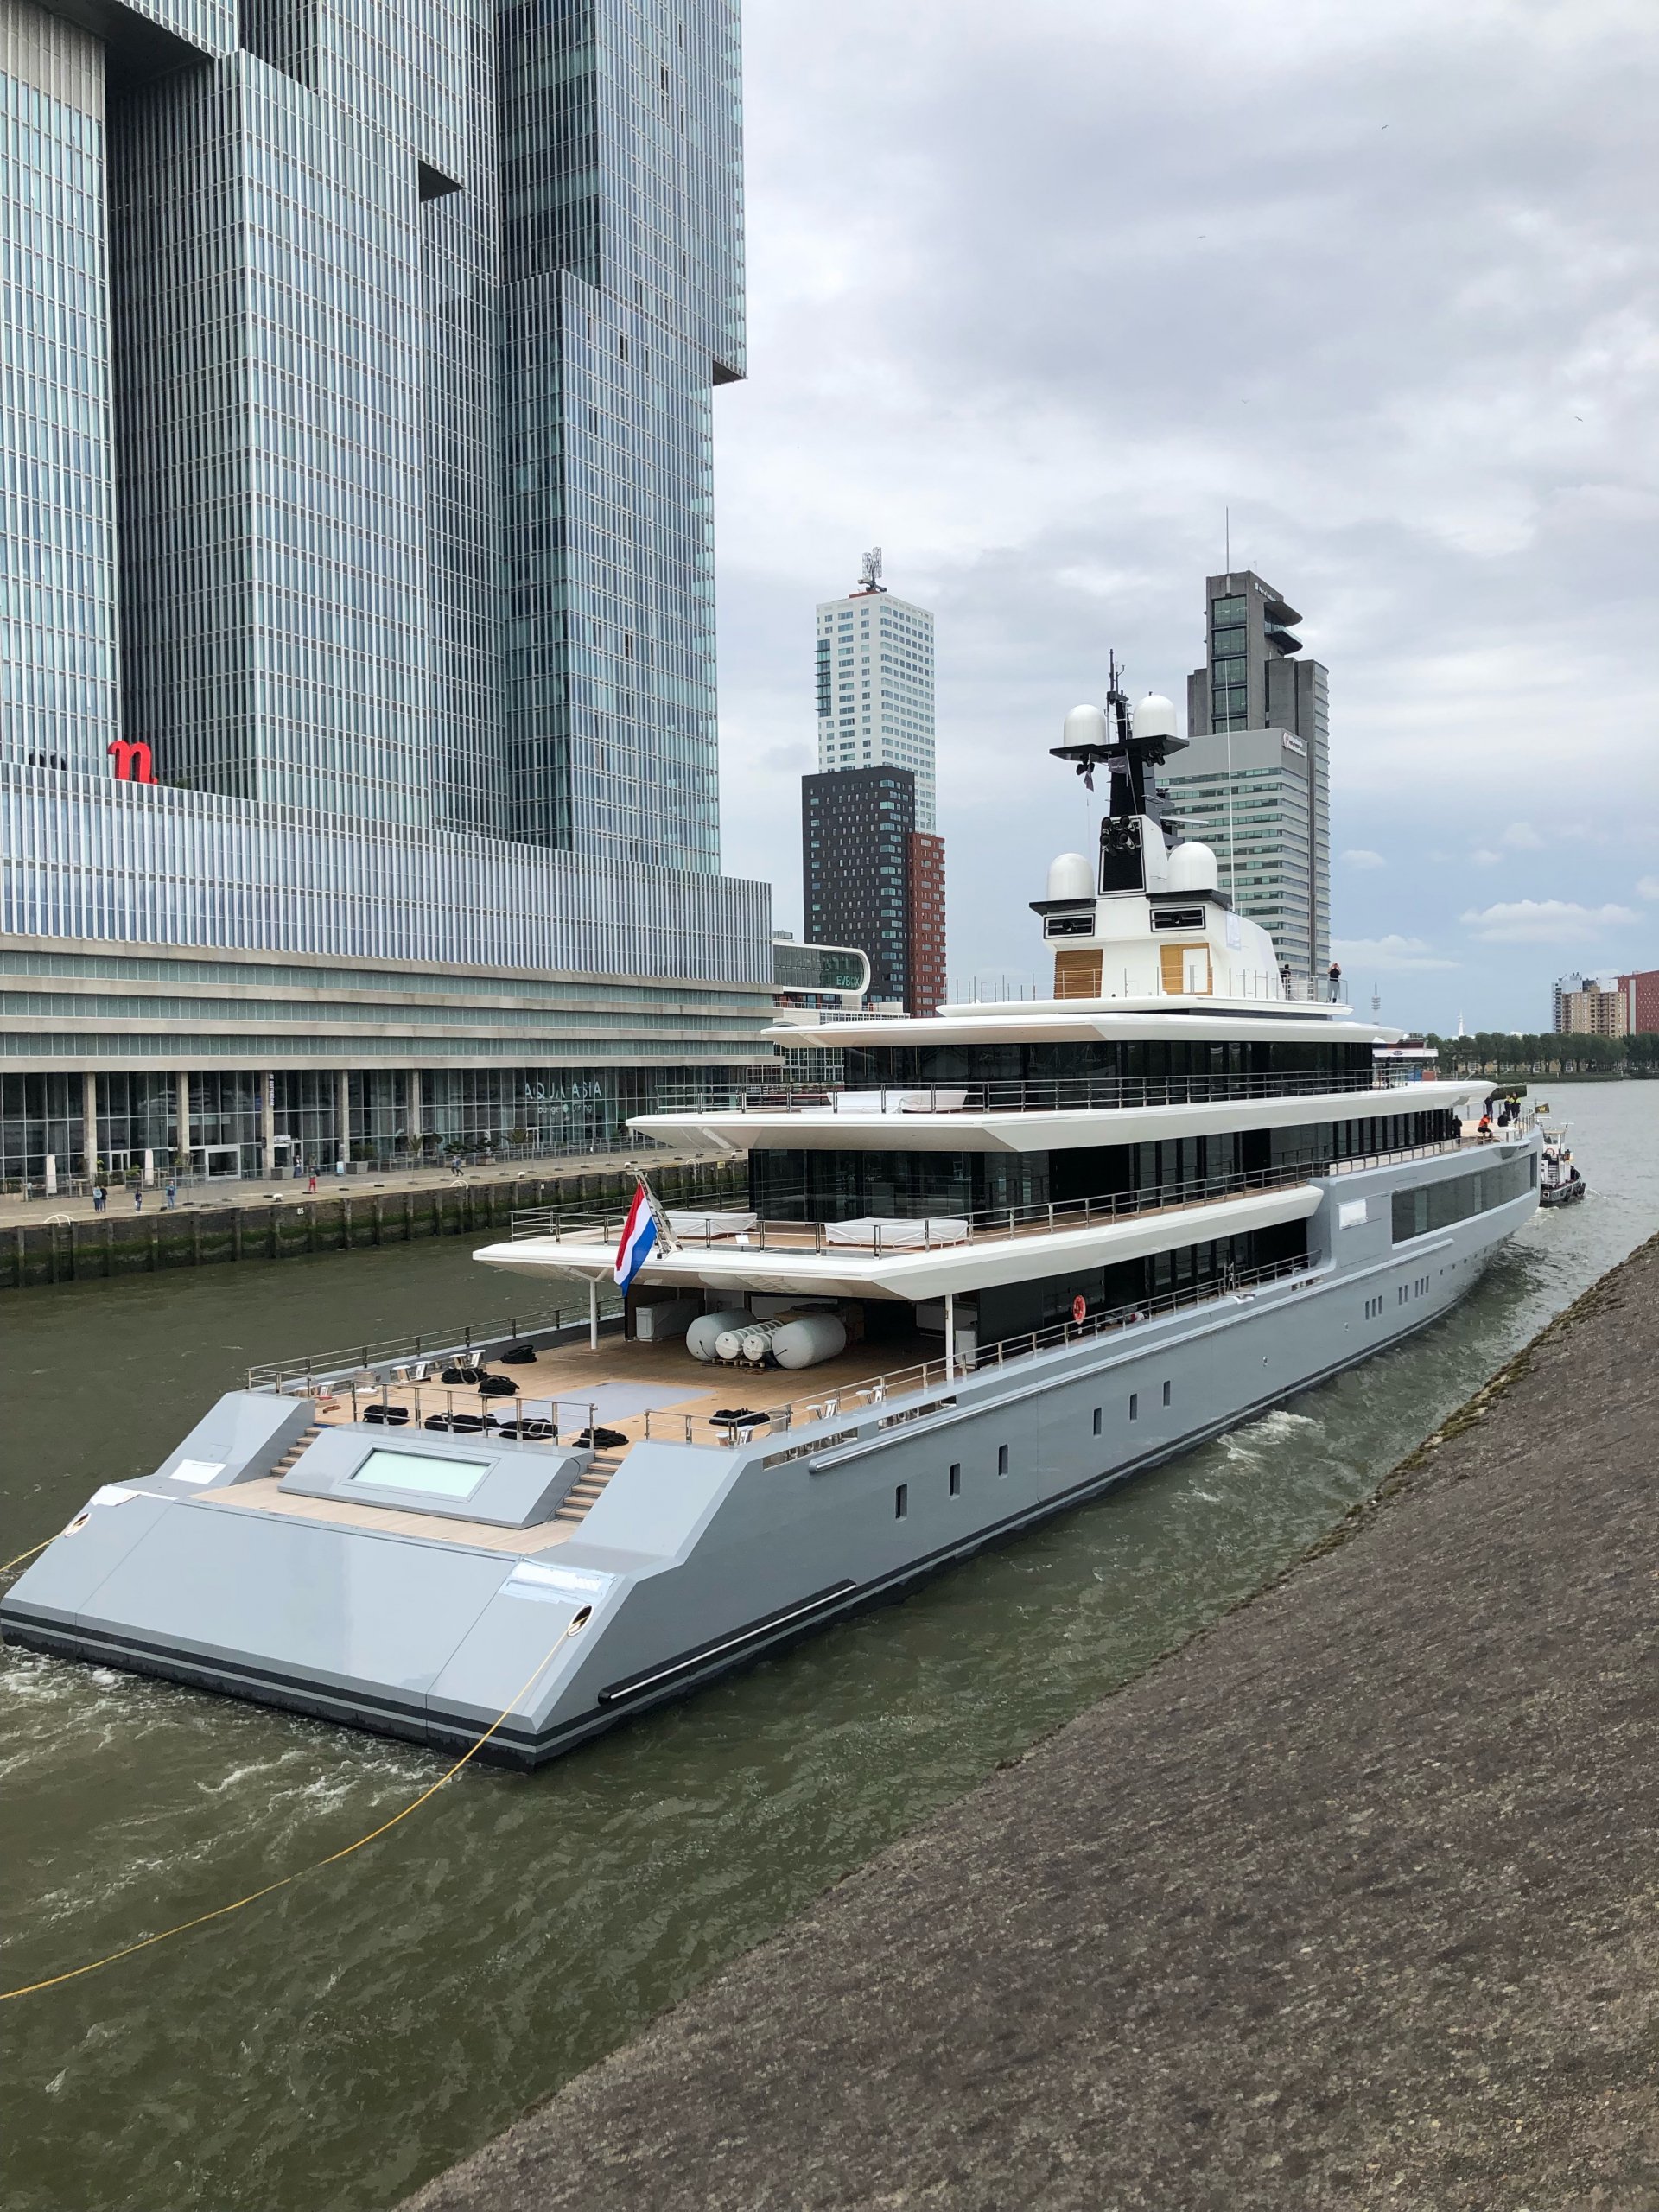 OceancoProjet de Steven Y720 sur les transports à Rotterdam - Steven SpielbergNouveau projet de Steven Yacht?